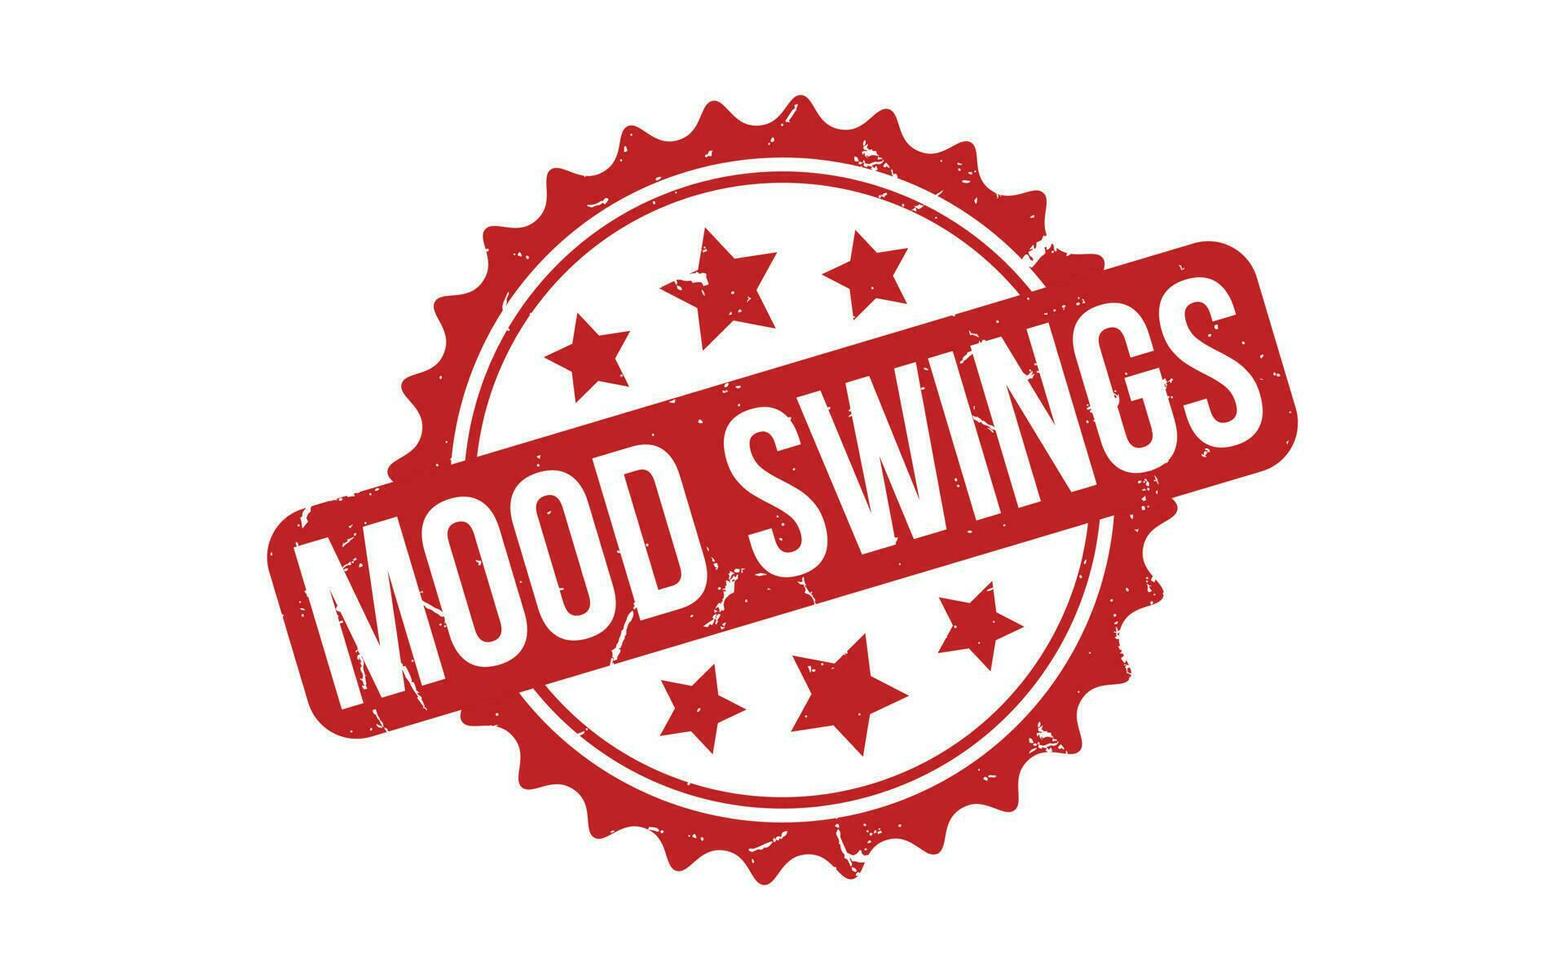 Mood Swings rubber grunge stamp seal vector